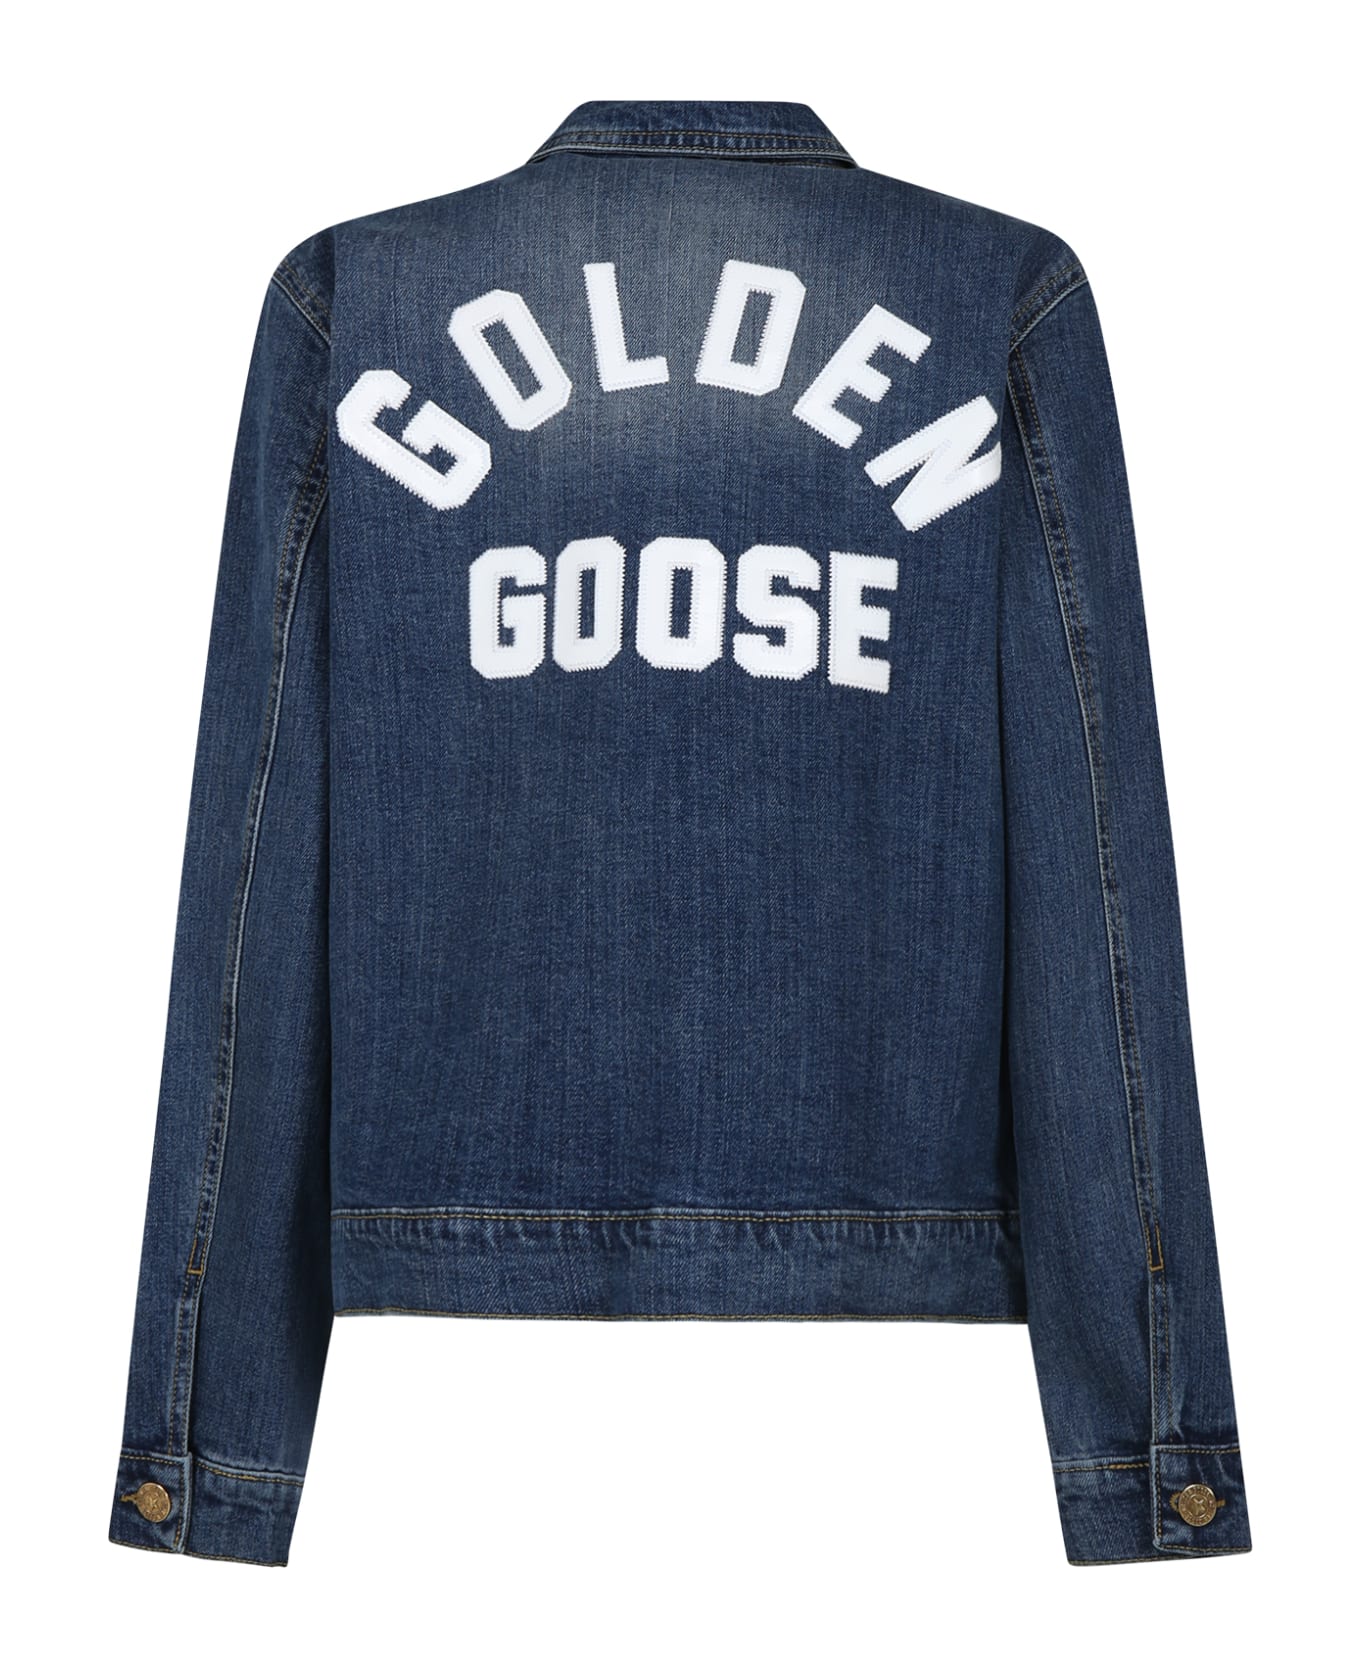 Golden Goose Blue Jacket For Kids With Logo - Denim